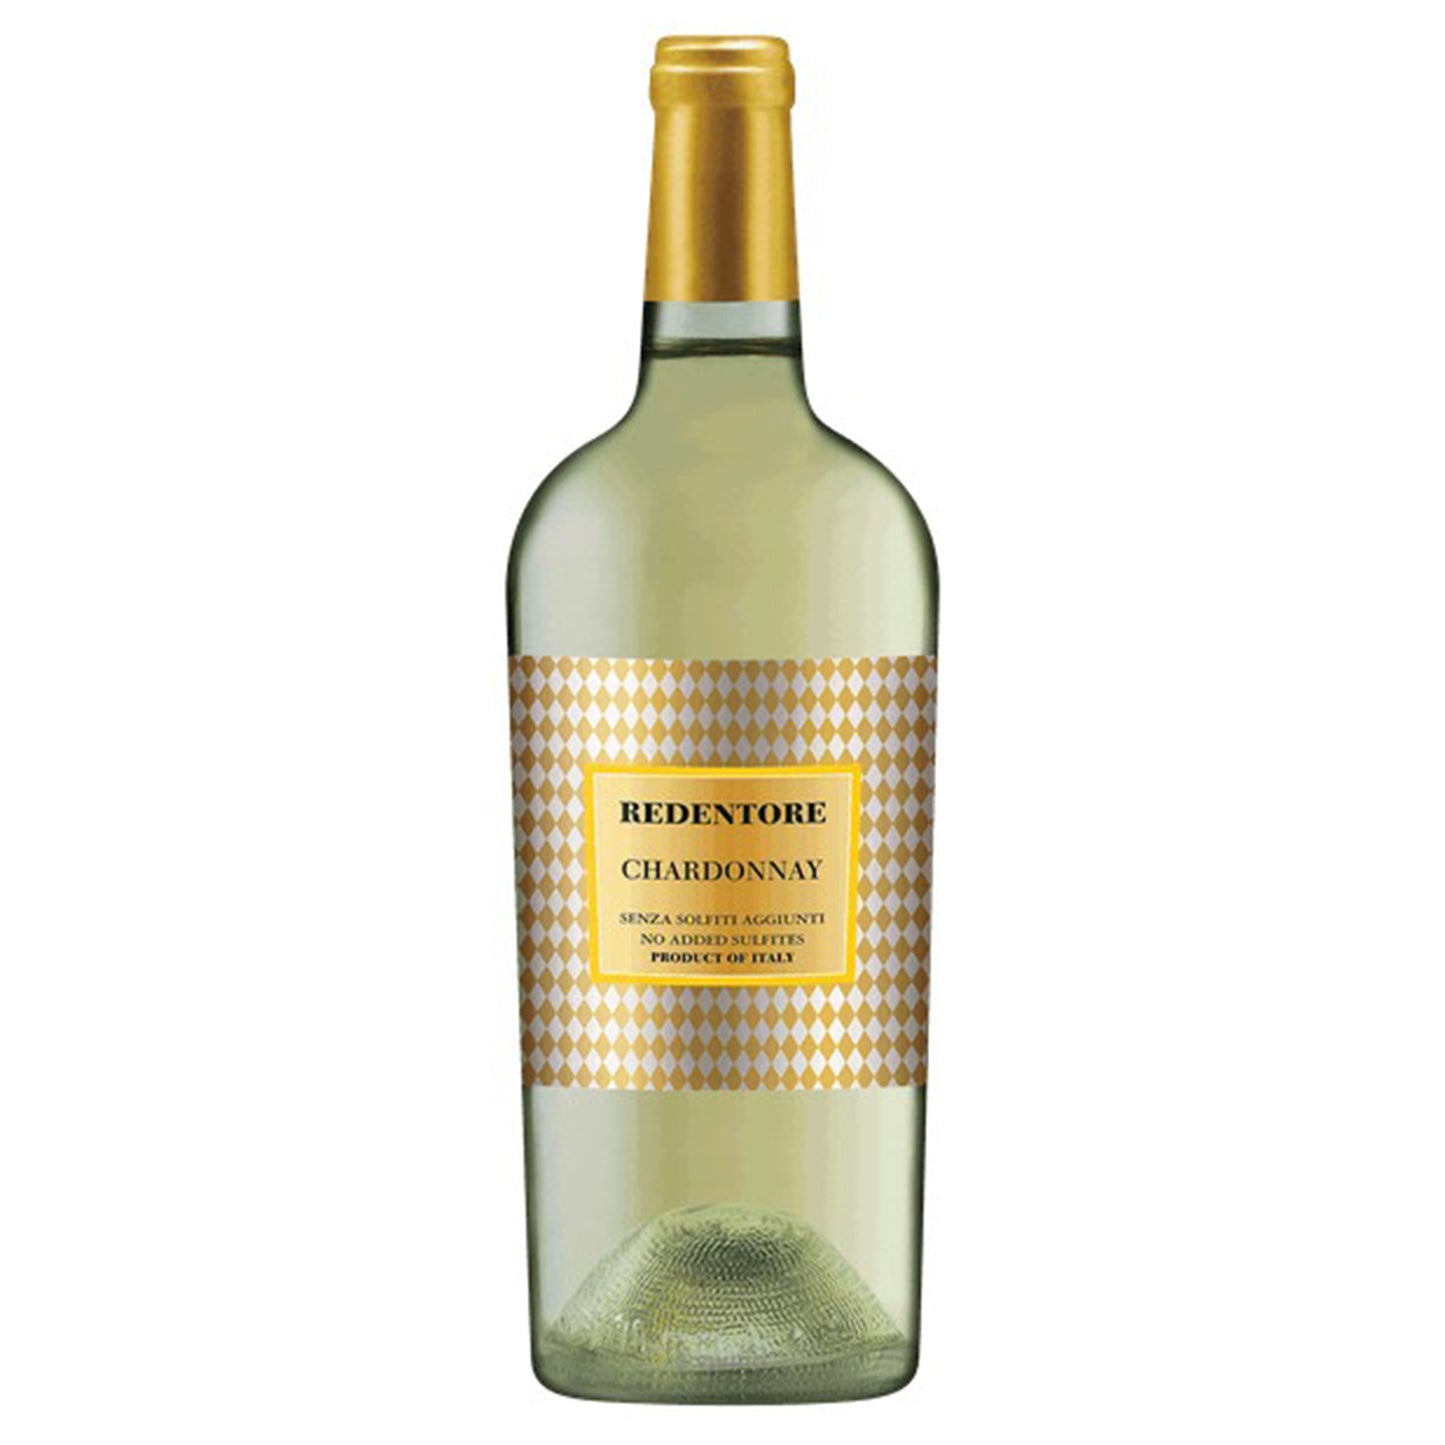 Redentore Chardonnay 2021 (750 ml)